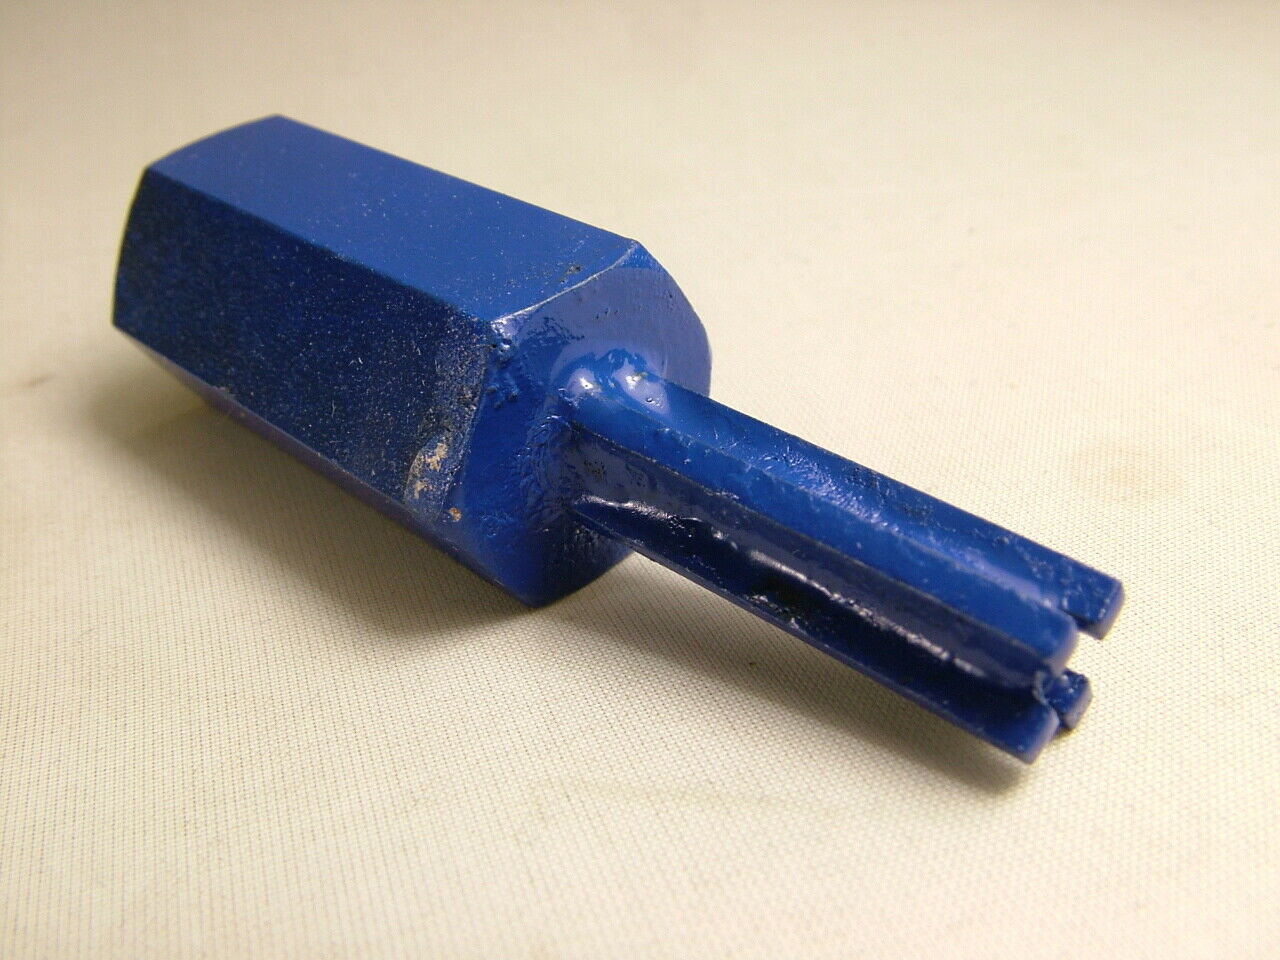 Solid Carbide 4-Flute Mortar Raking Bit, 8 x 30mm - Click Image to Close